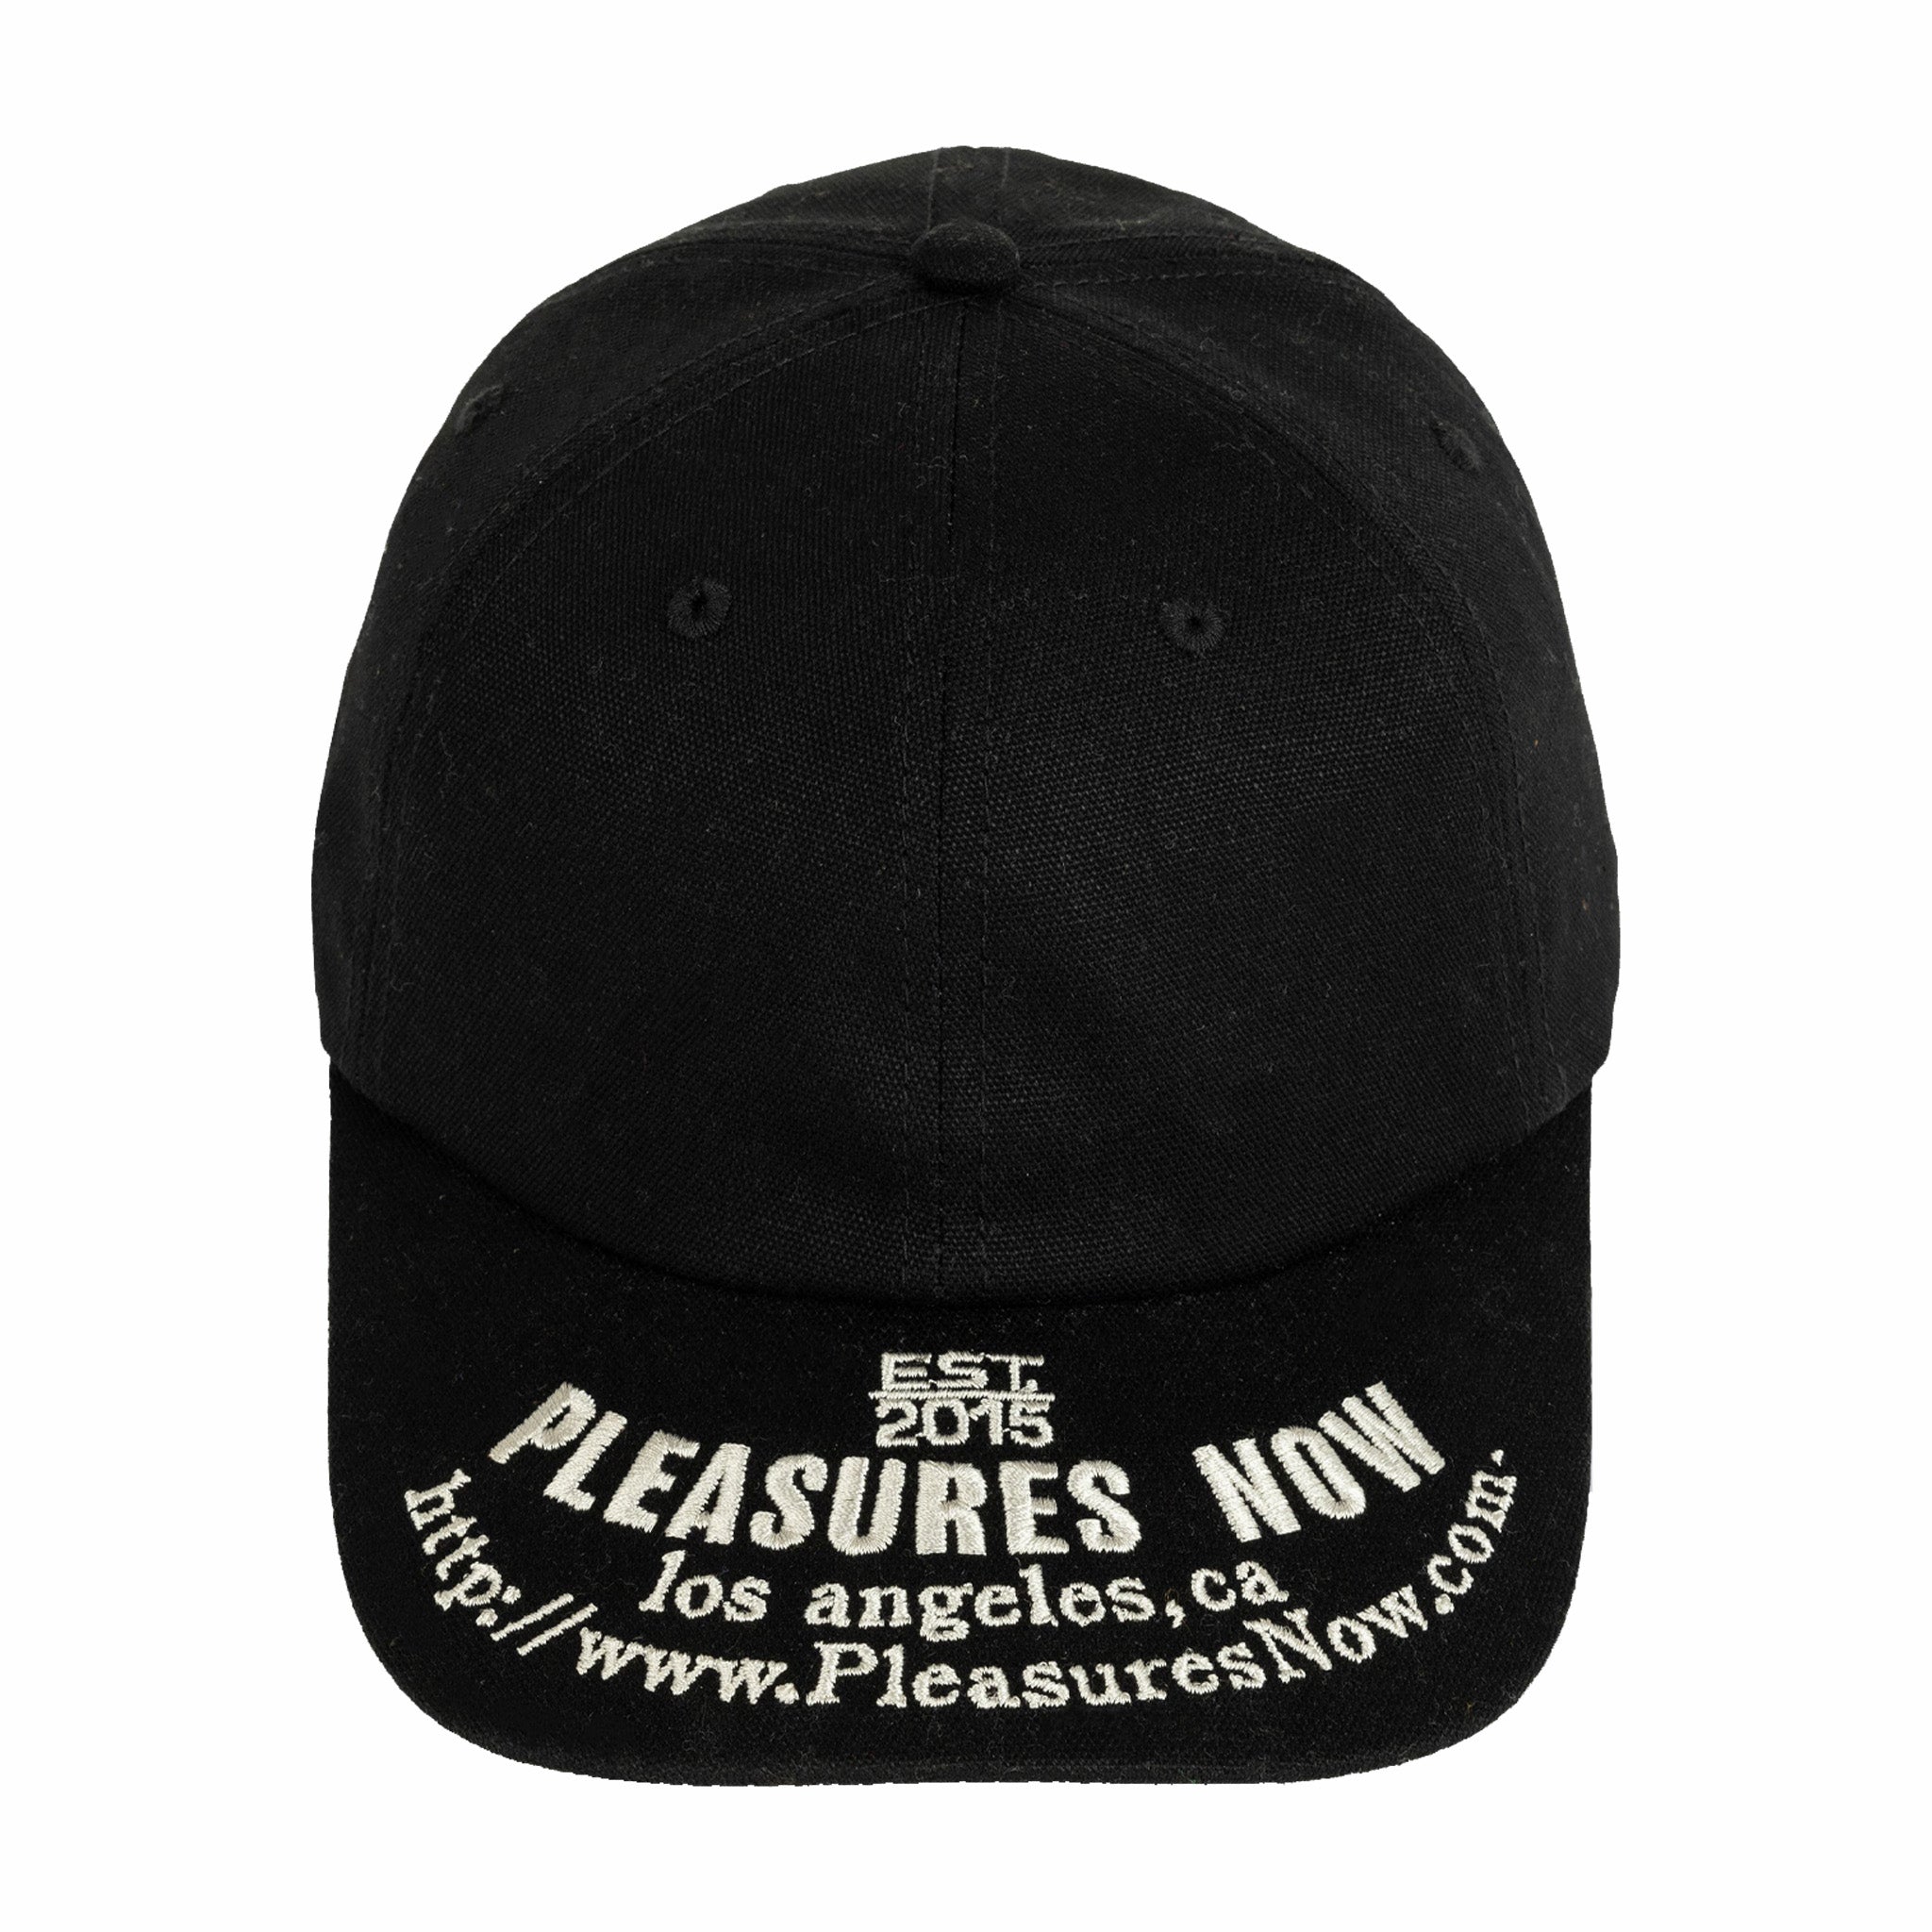 Pleasures HTTP Canvas Cap (Black) - August Shop